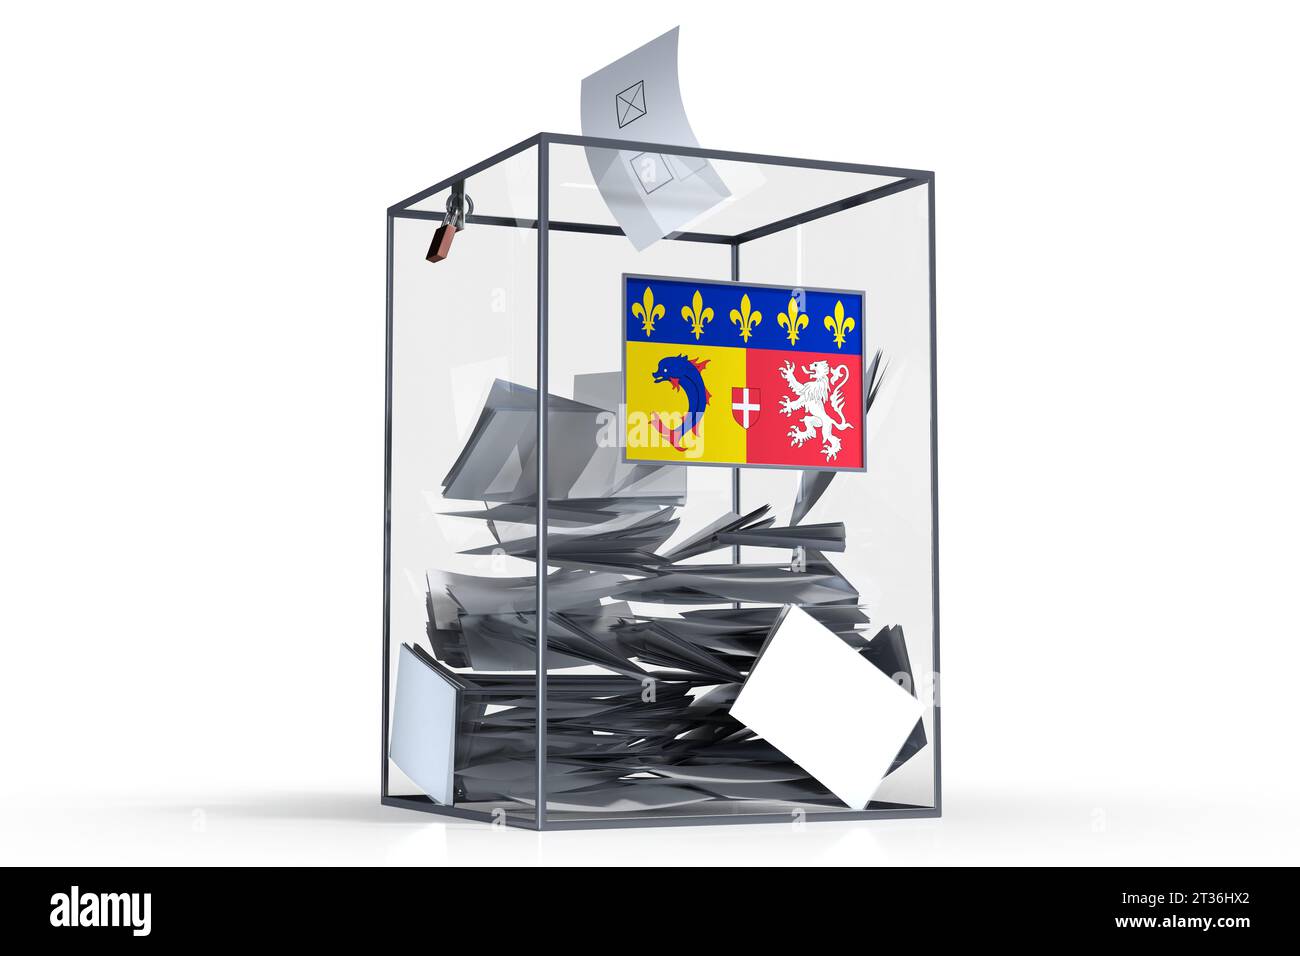 Rhone-Alpes - drapeau sur urnes et voix - concept électoral Banque D'Images